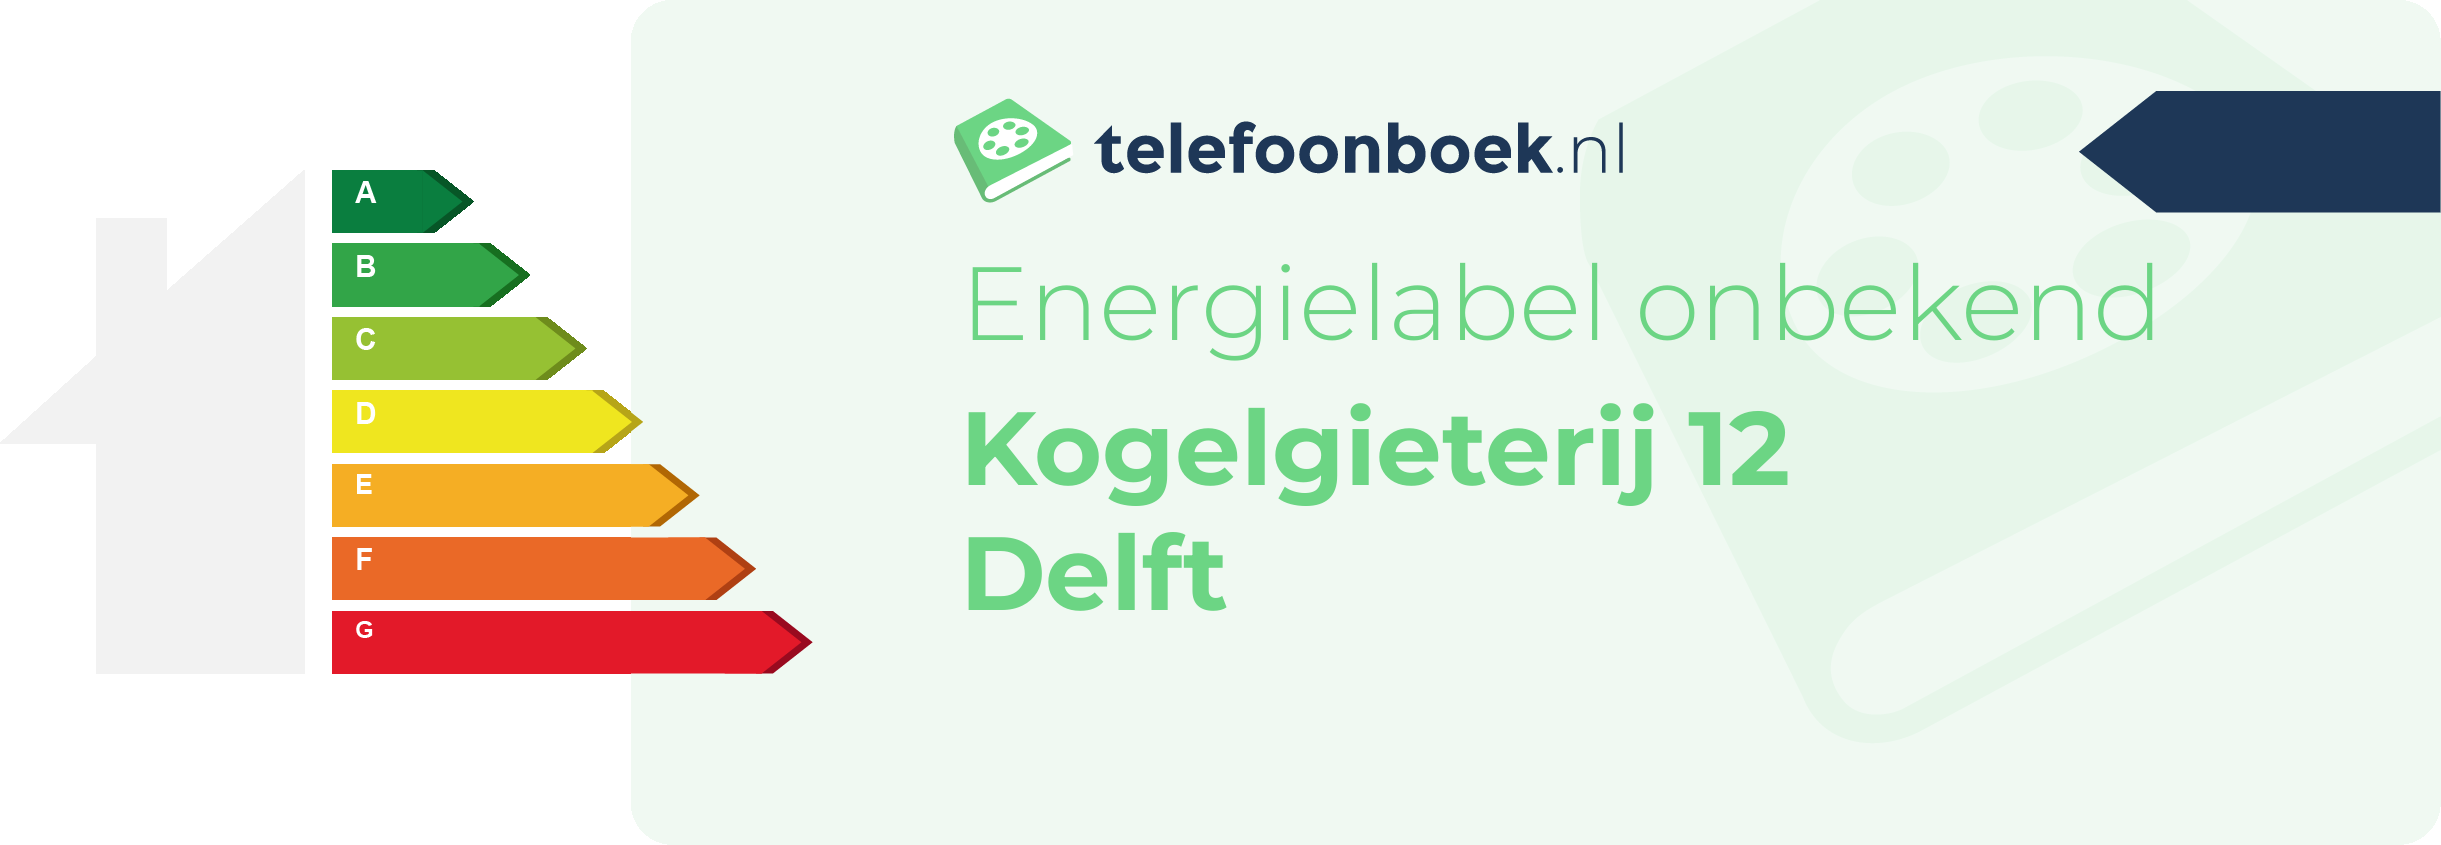 Energielabel Kogelgieterij 12 Delft